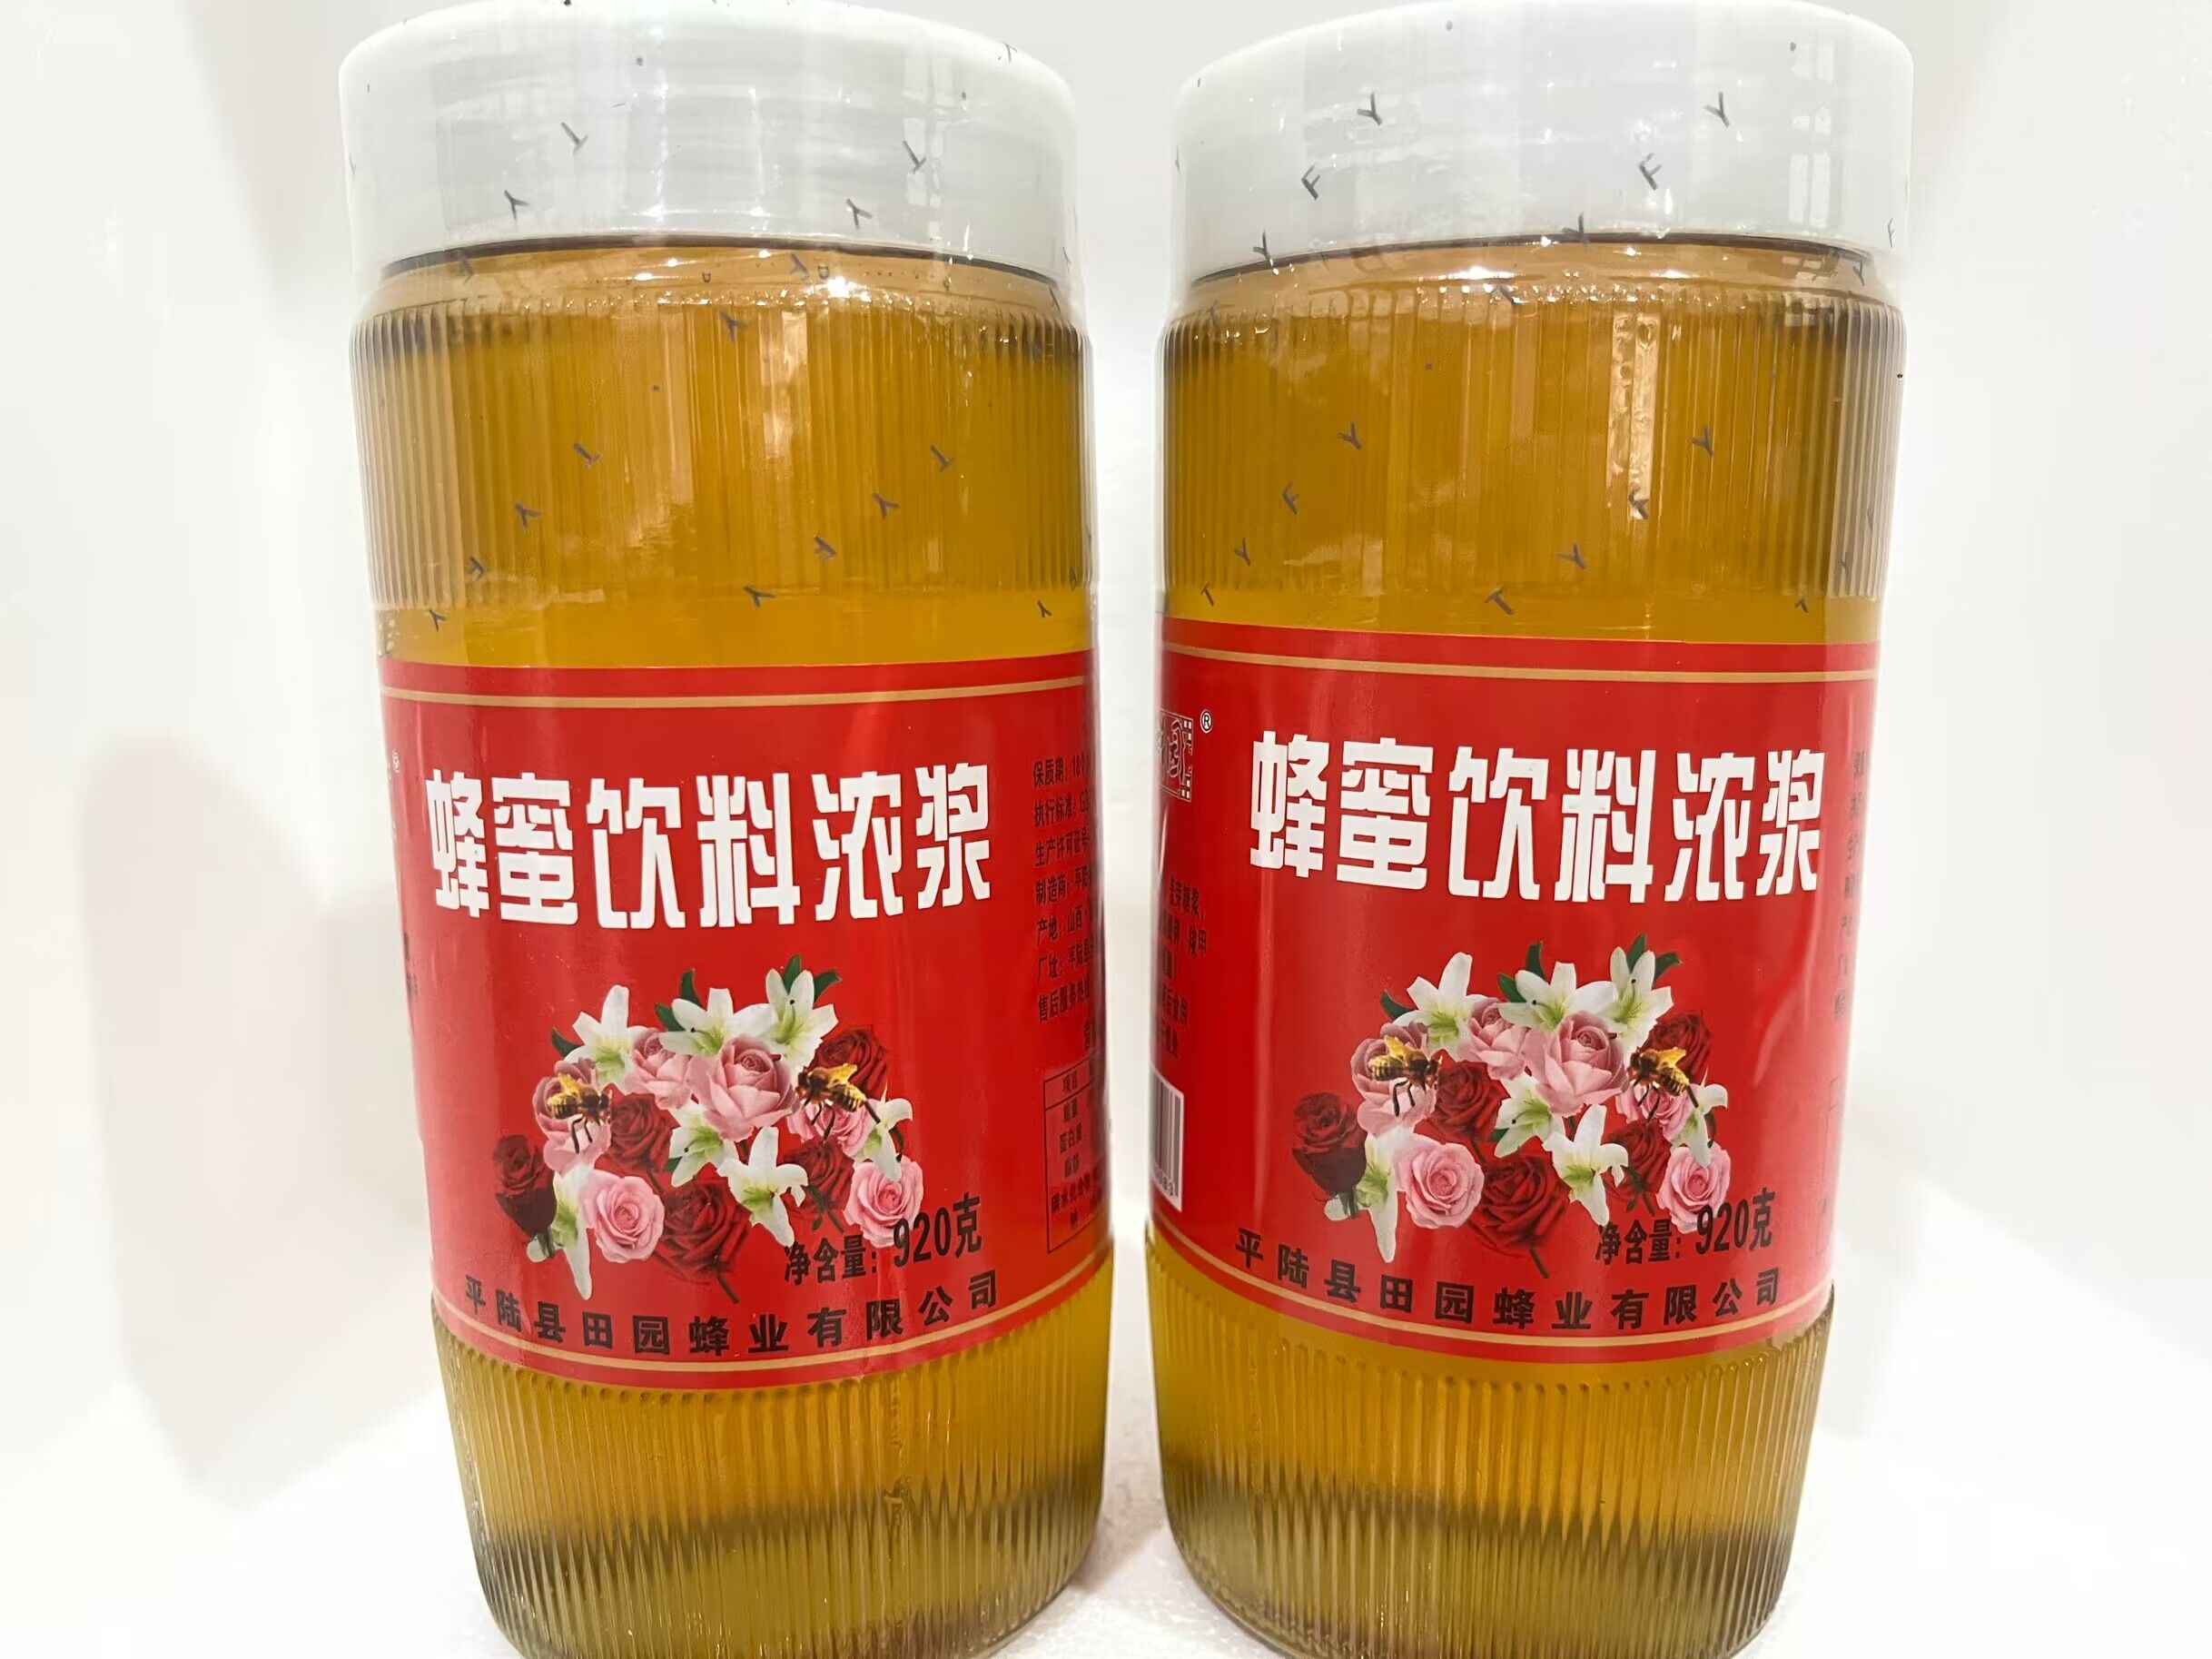 乡村蜂园蜂蜜浓浆920g 包邮平陆县田园蜂业有限公司